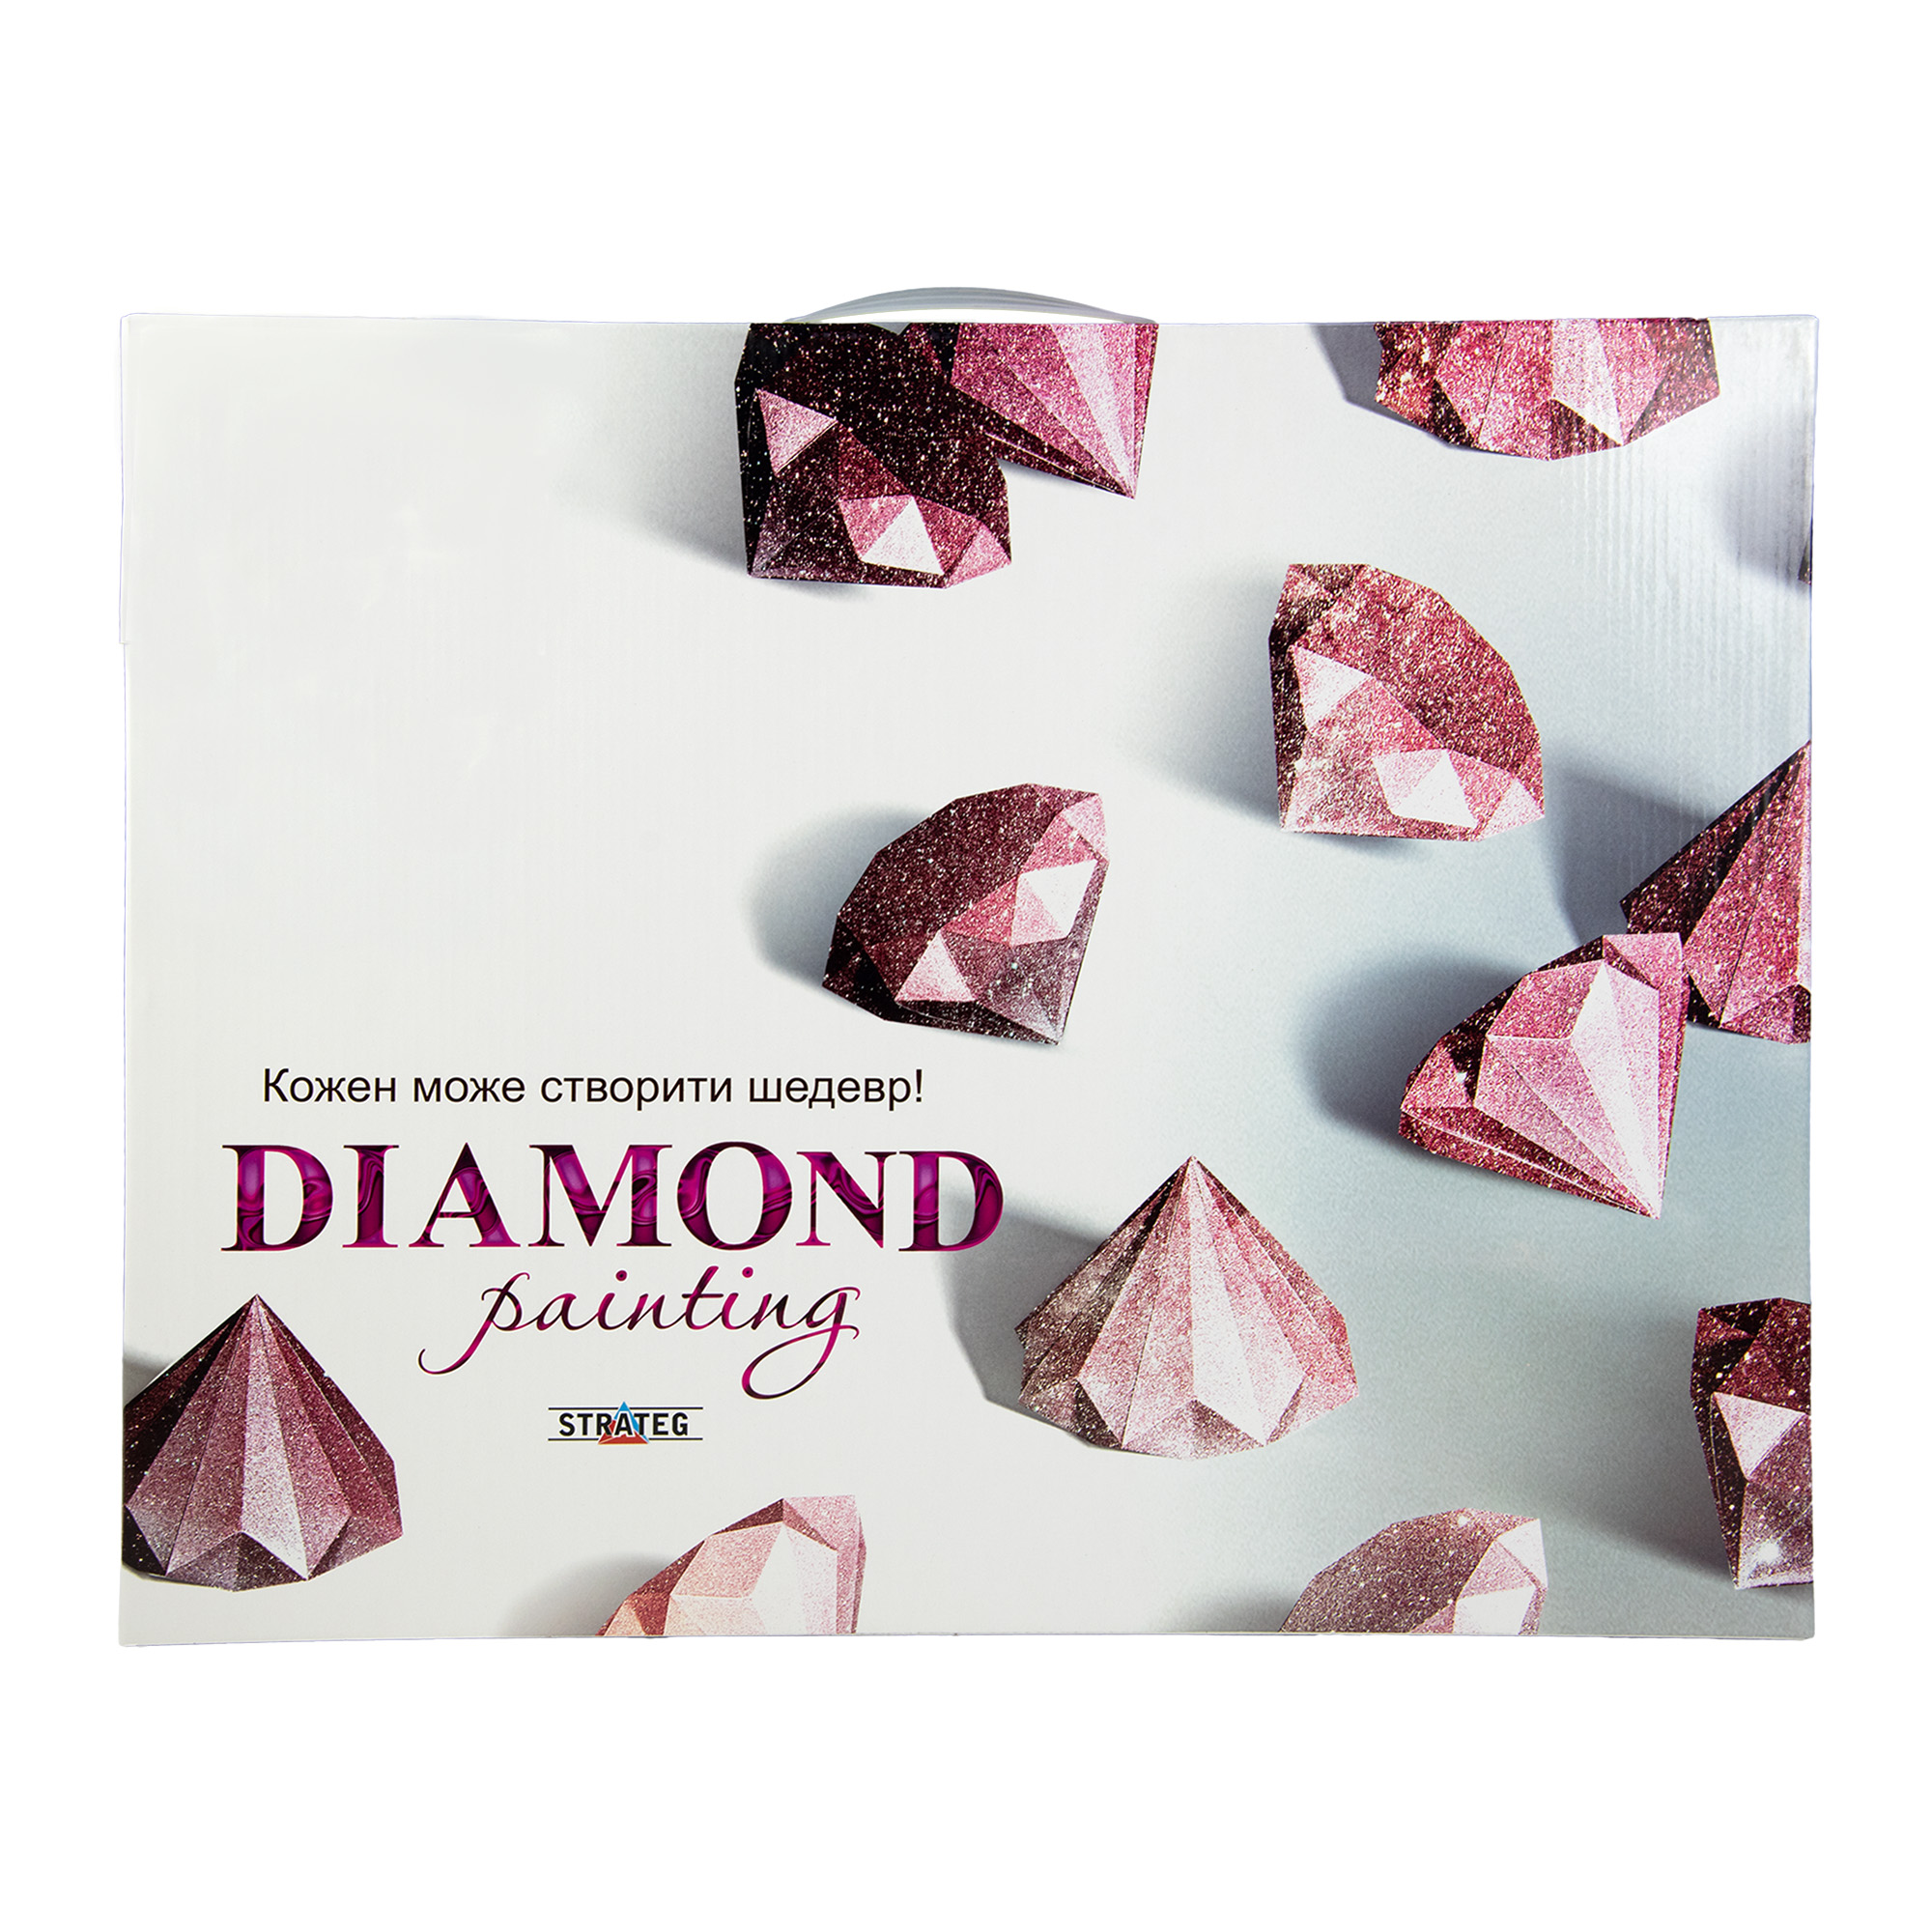 Diamantmosaik Strateg PREMIUM Drache in Blumen Größe 30x30 cm (ME13836)